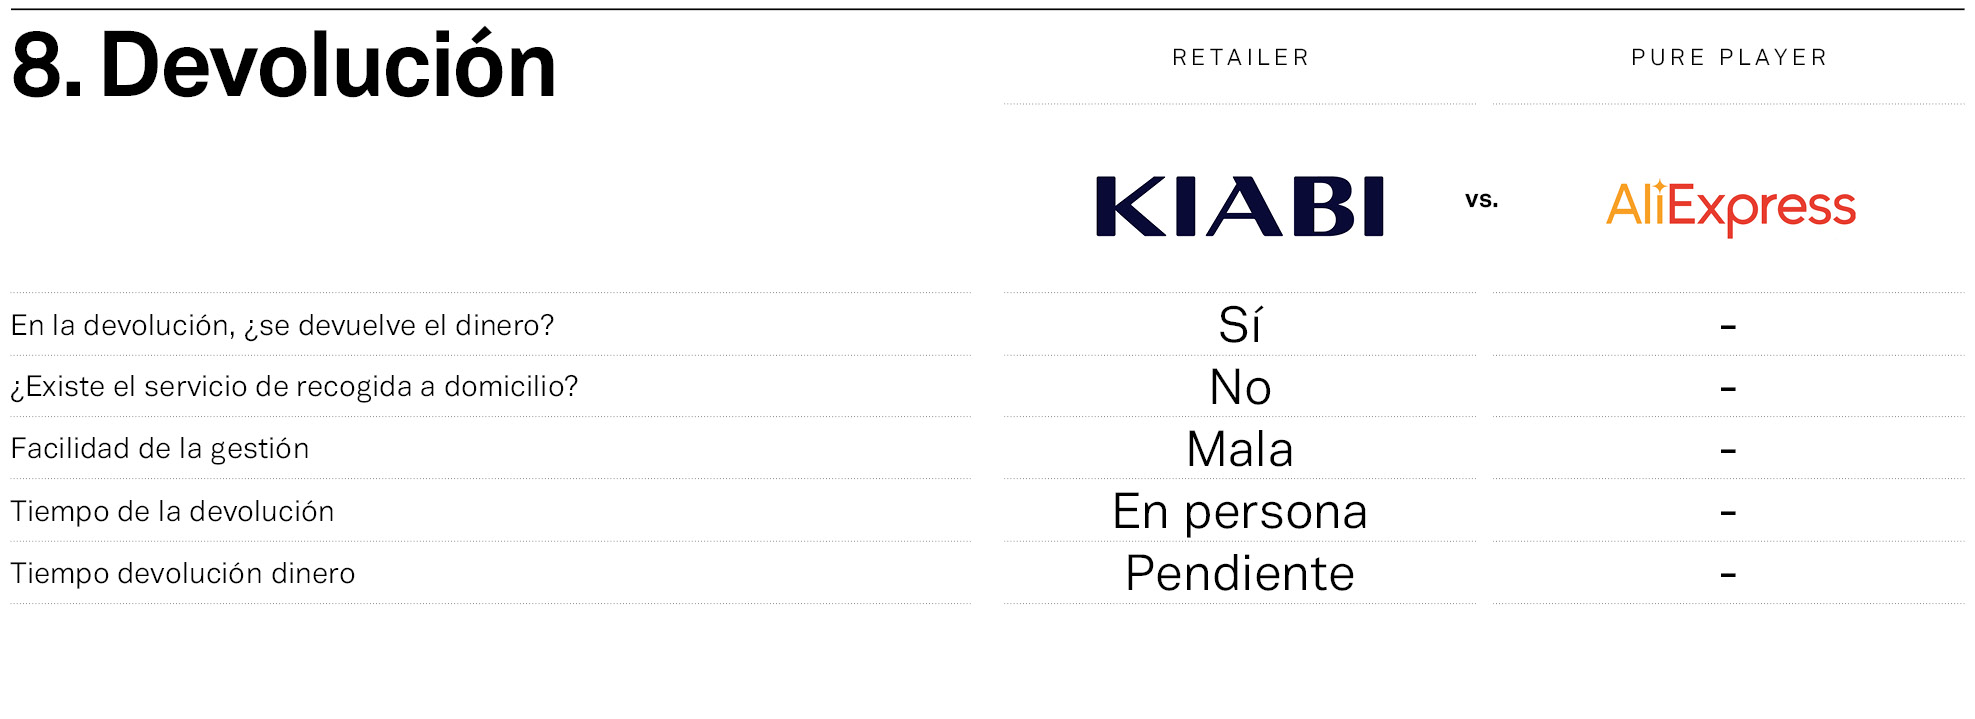 Kiabi frente a Aliexpres, frente a frente en la compra online